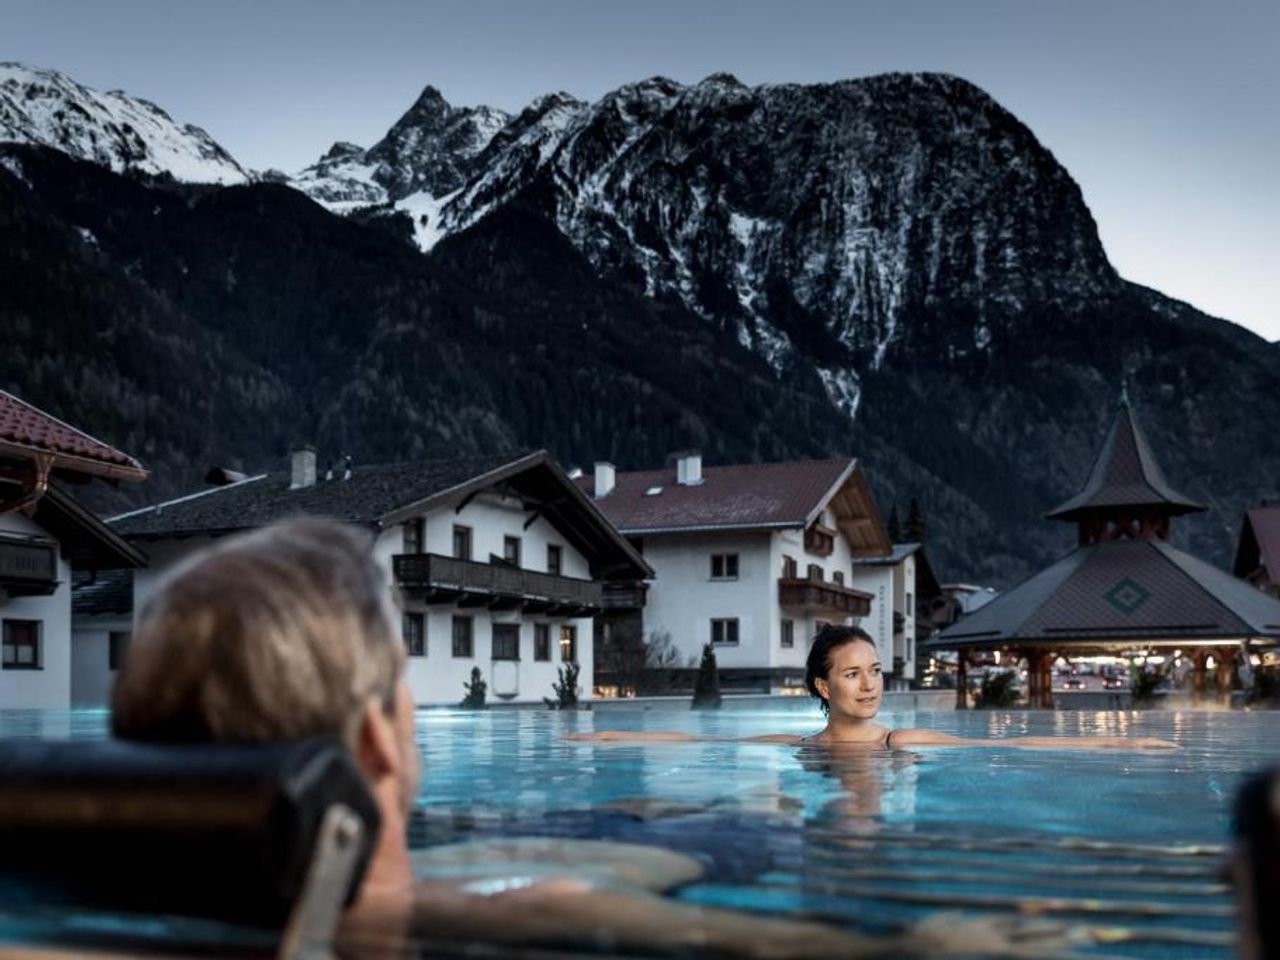 7 Tage Wellness & Genuss in den Tiroler Alpen